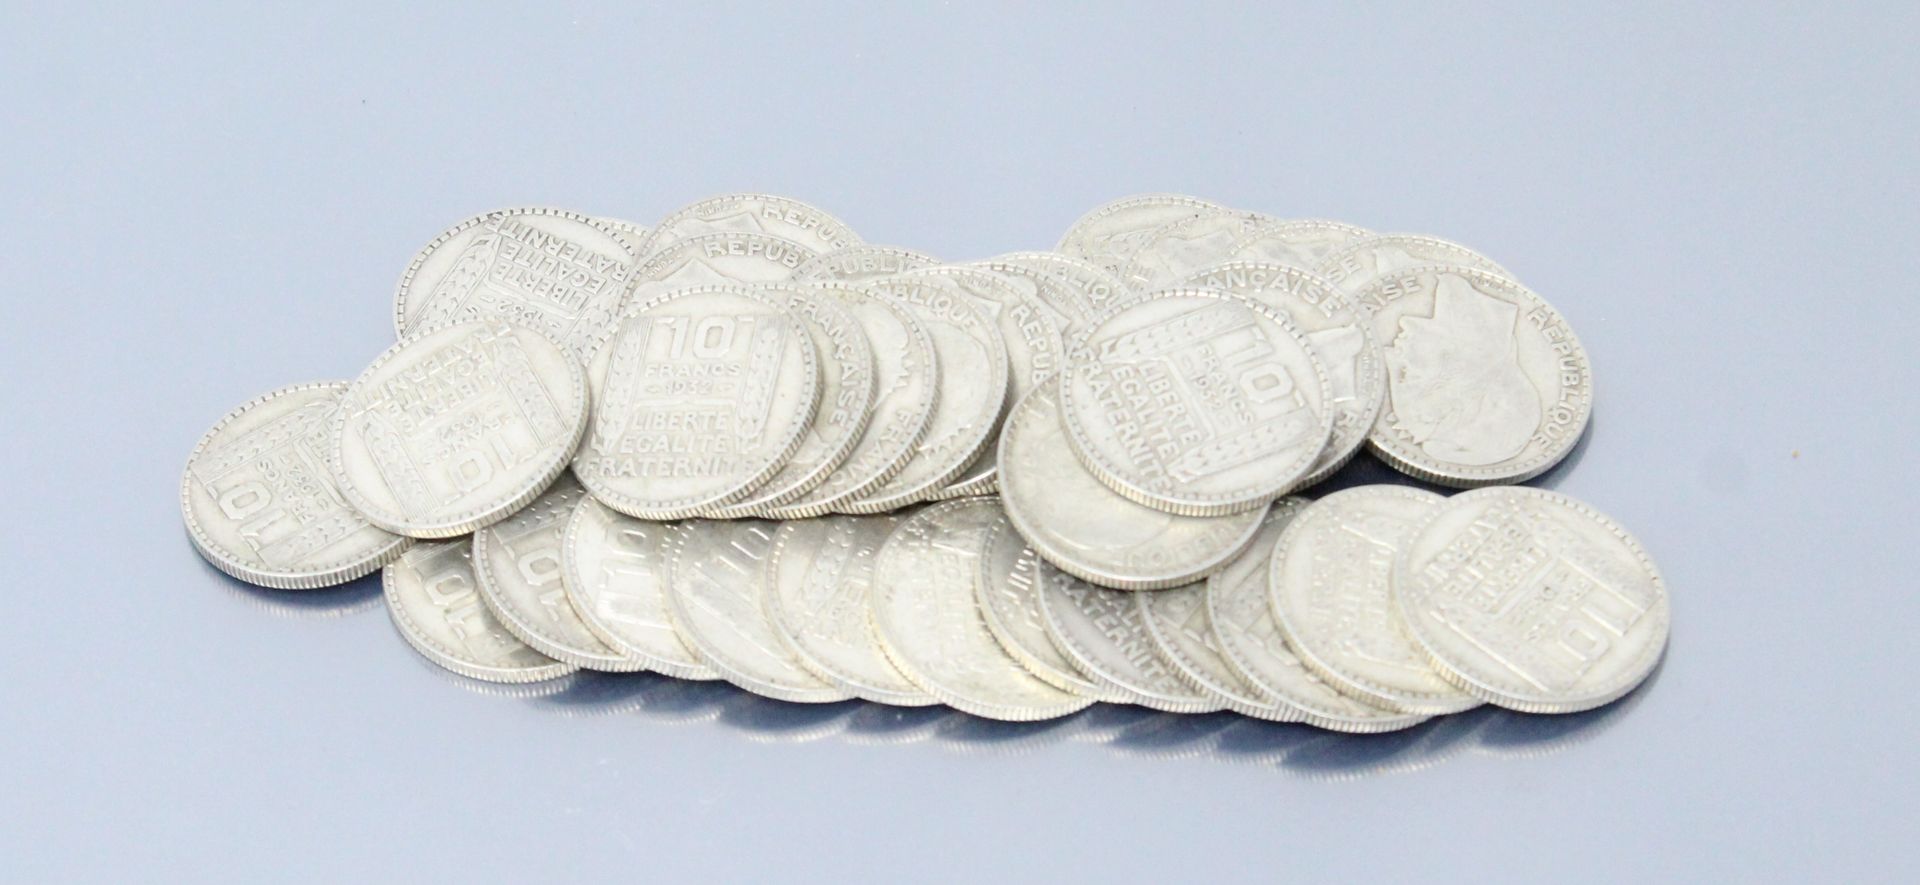 Null Monete d'argento del tipo 10 franchi "Torino", diverse annate.



Peso: 350&hellip;